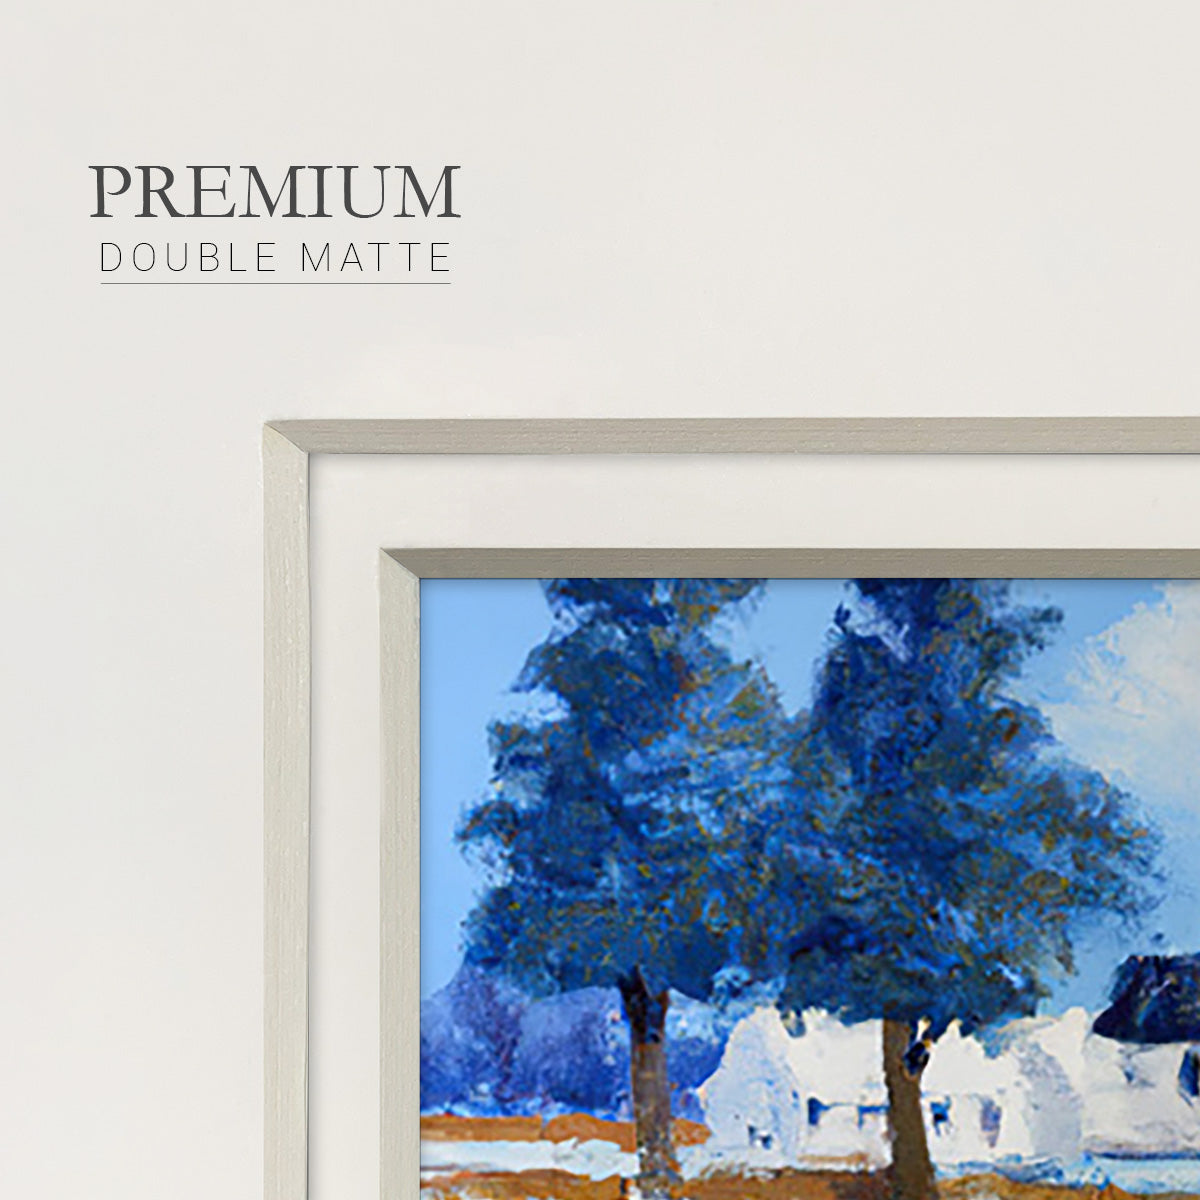 Winter Barn V Premium Framed Print Double Matboard